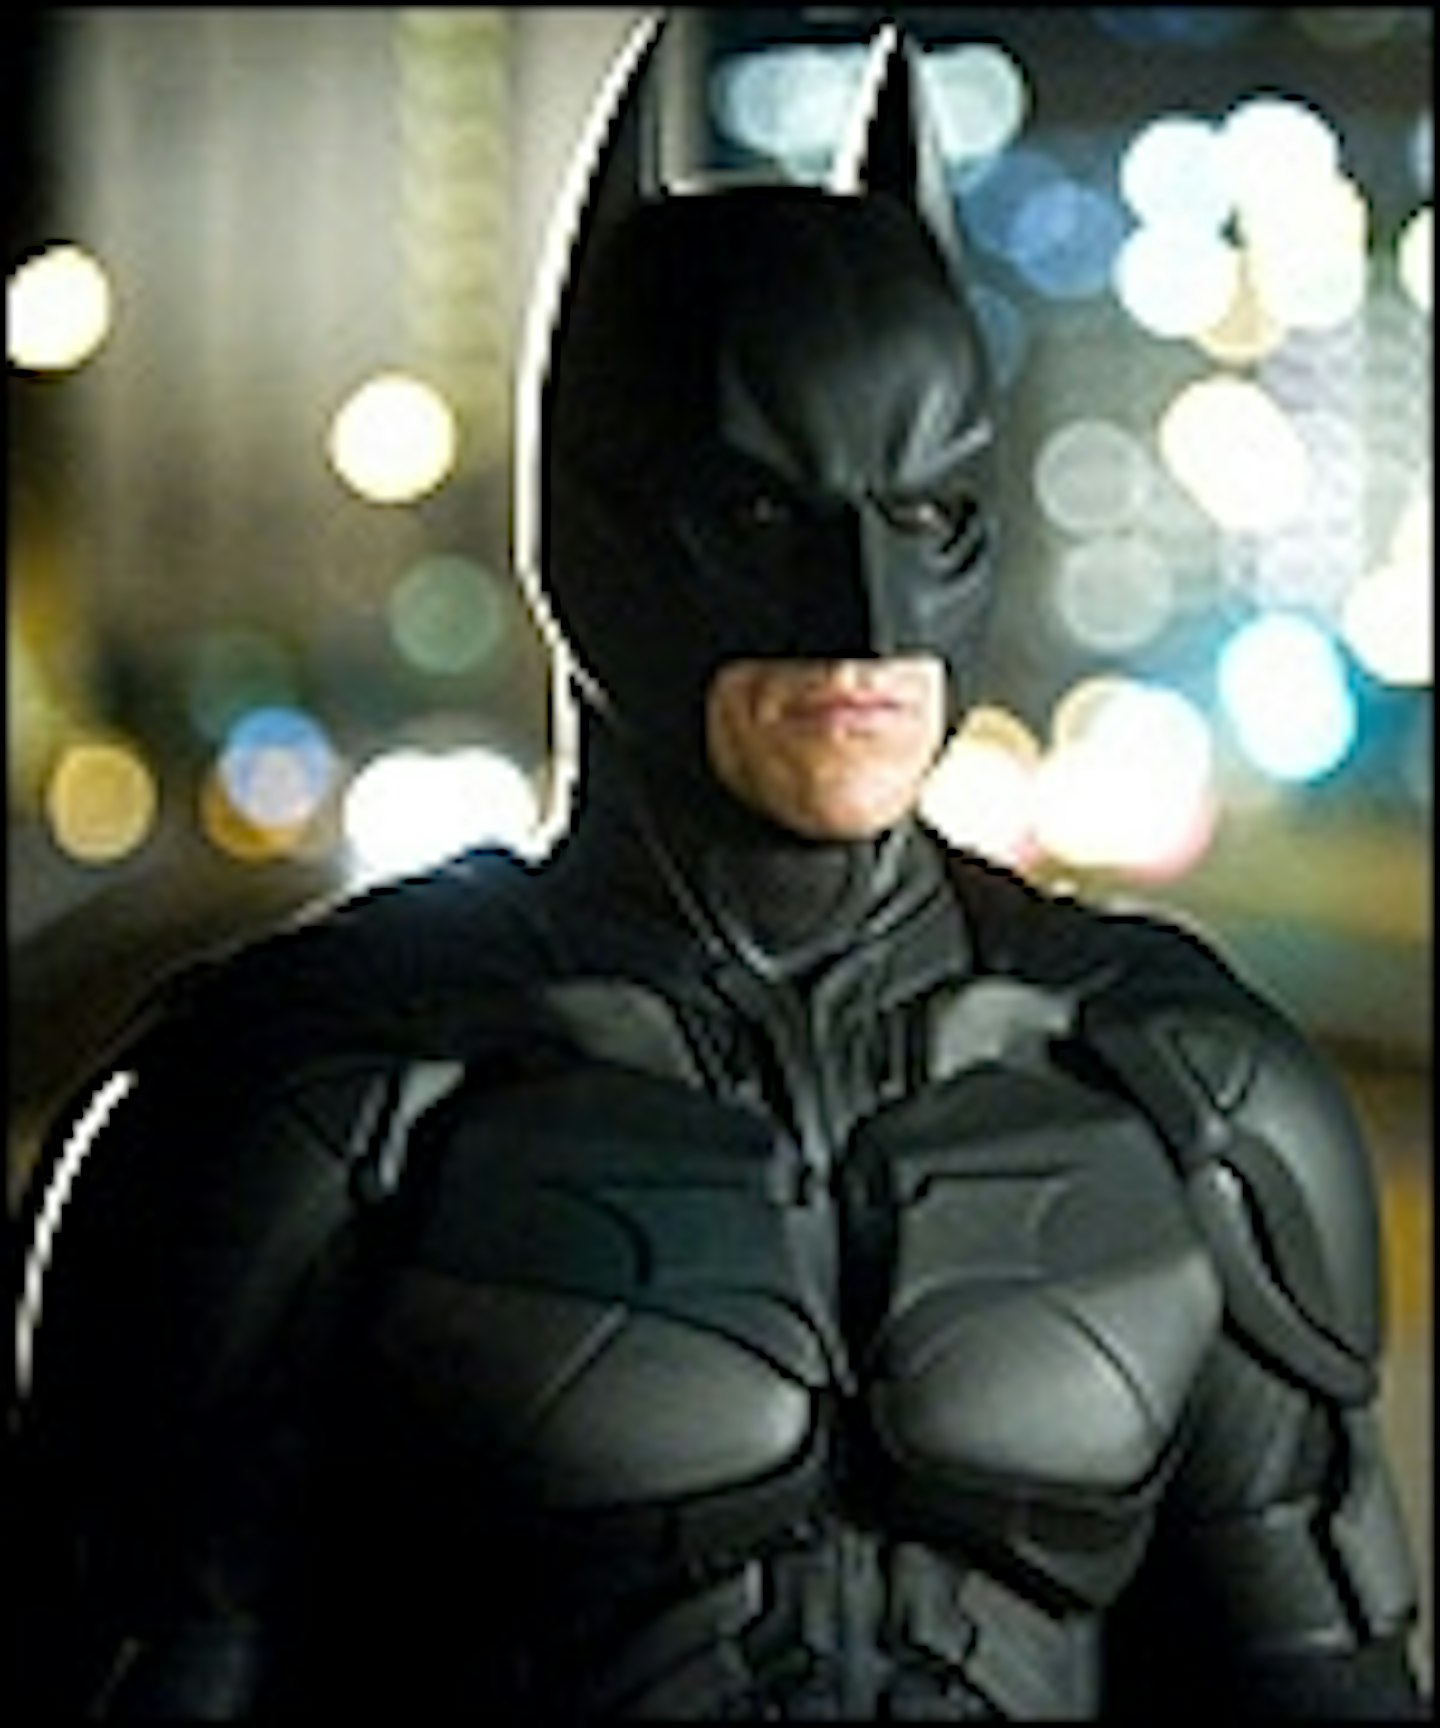 First Dark Knight Rises Set Pics Appear